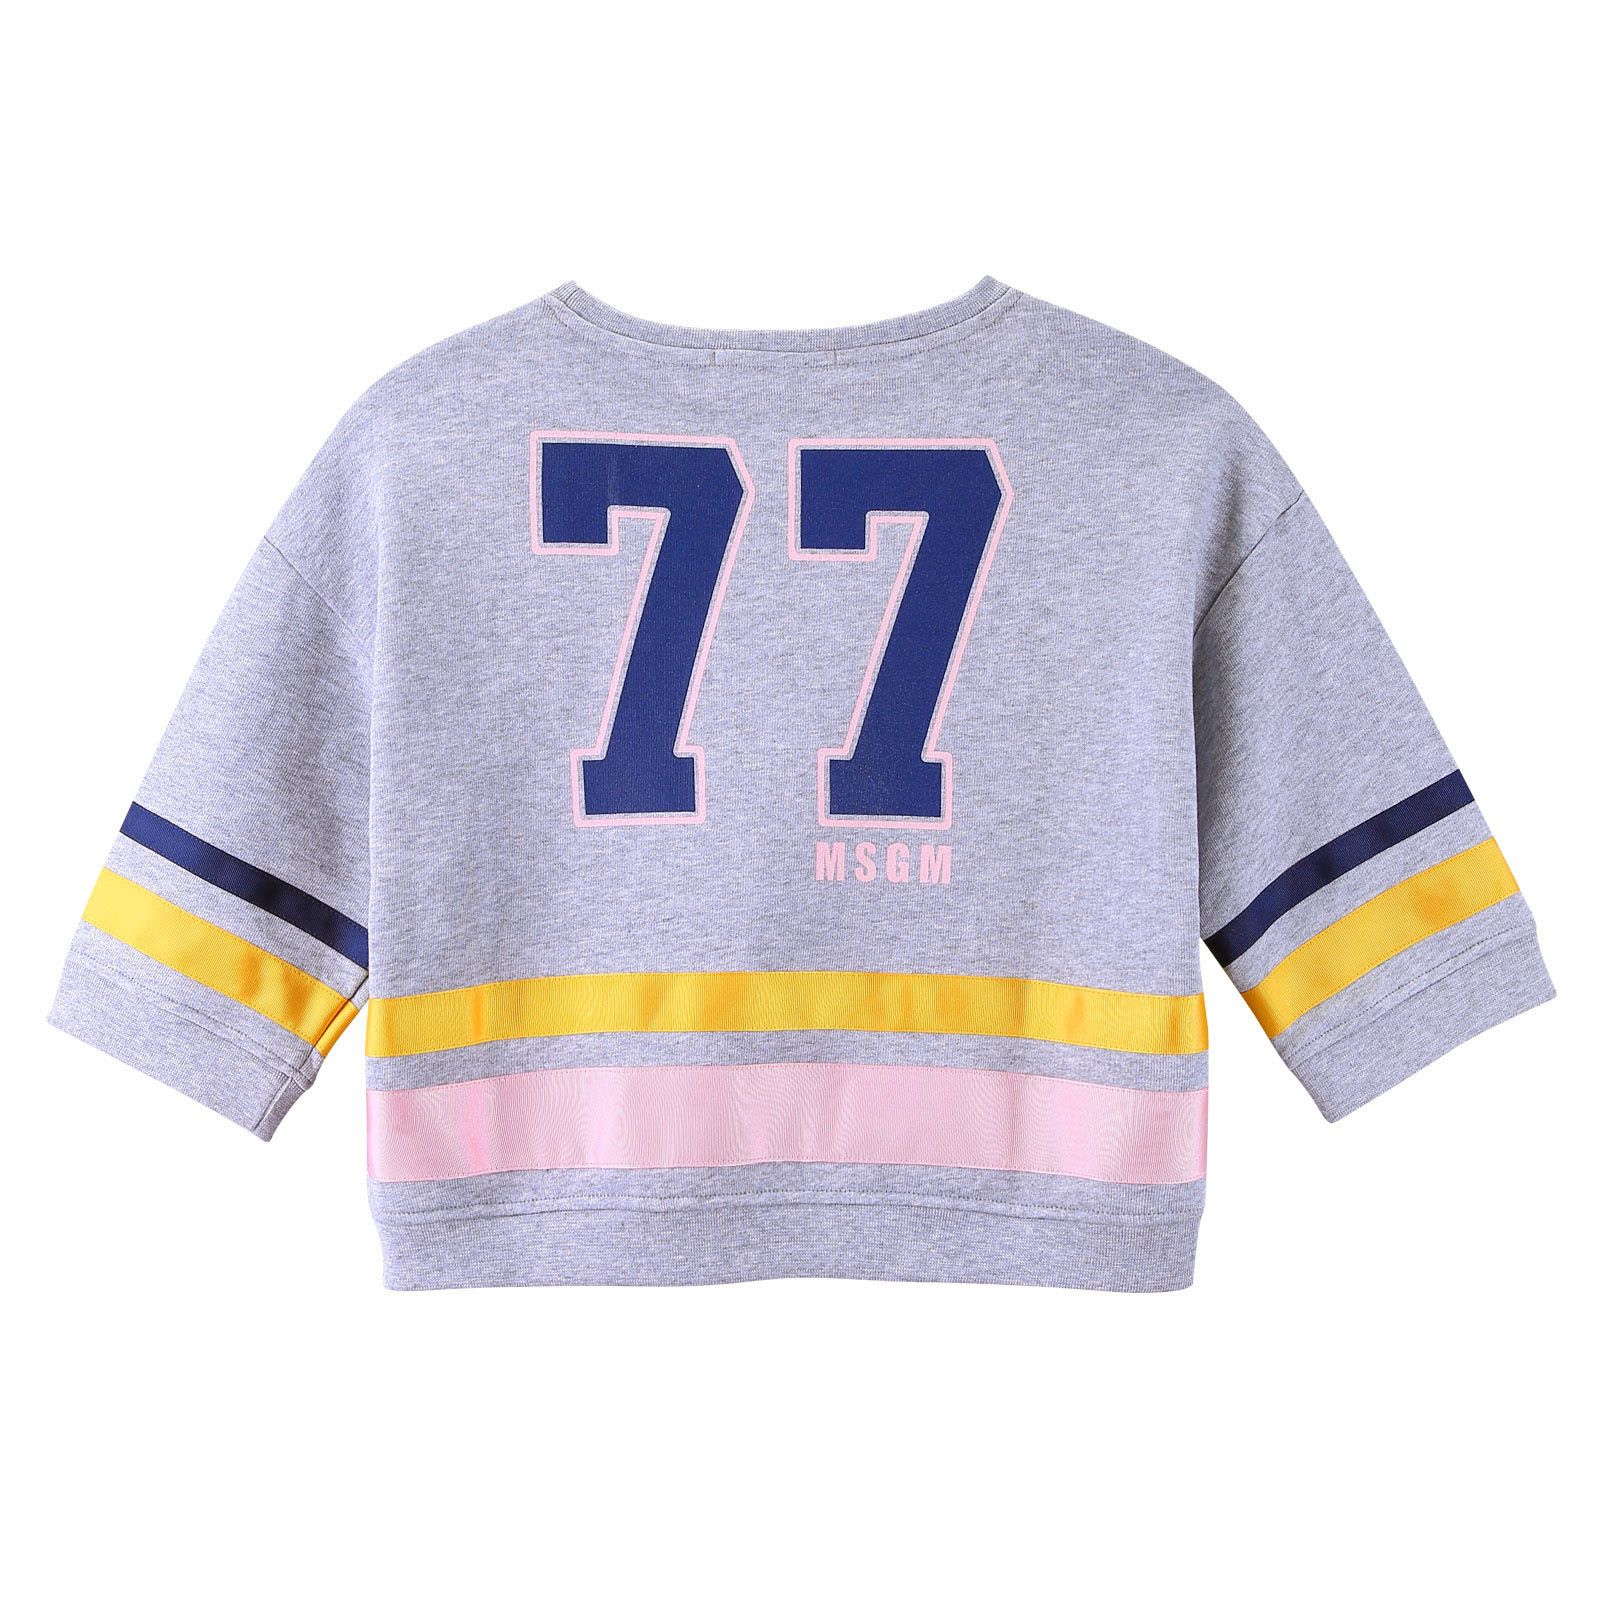 Girls Grey Cotton Sweatshirt With Gold&Pink Stripe - CÉMAROSE | Children's Fashion Store - 2